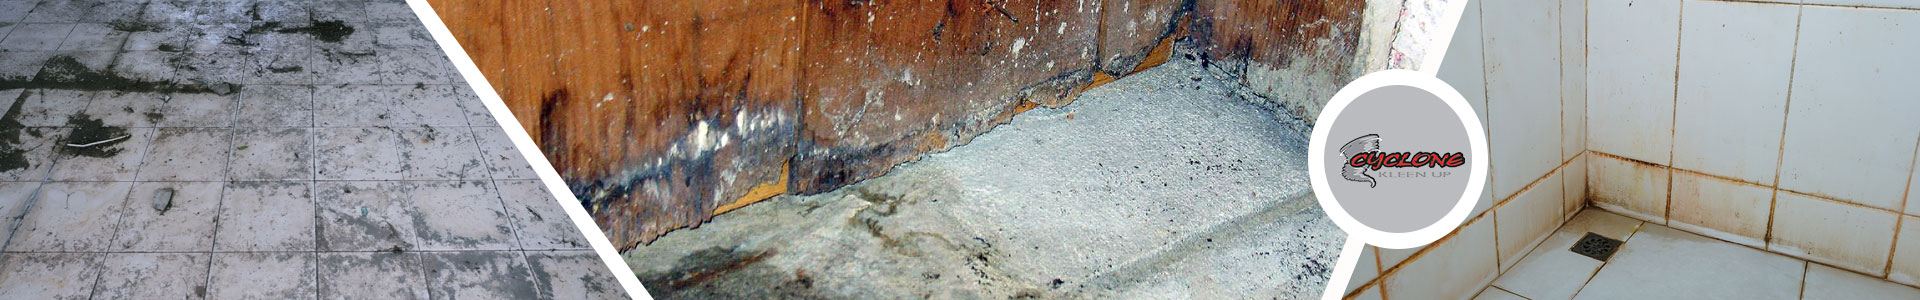 Odor Removal from Floor Water Damage in Pueblo, CO